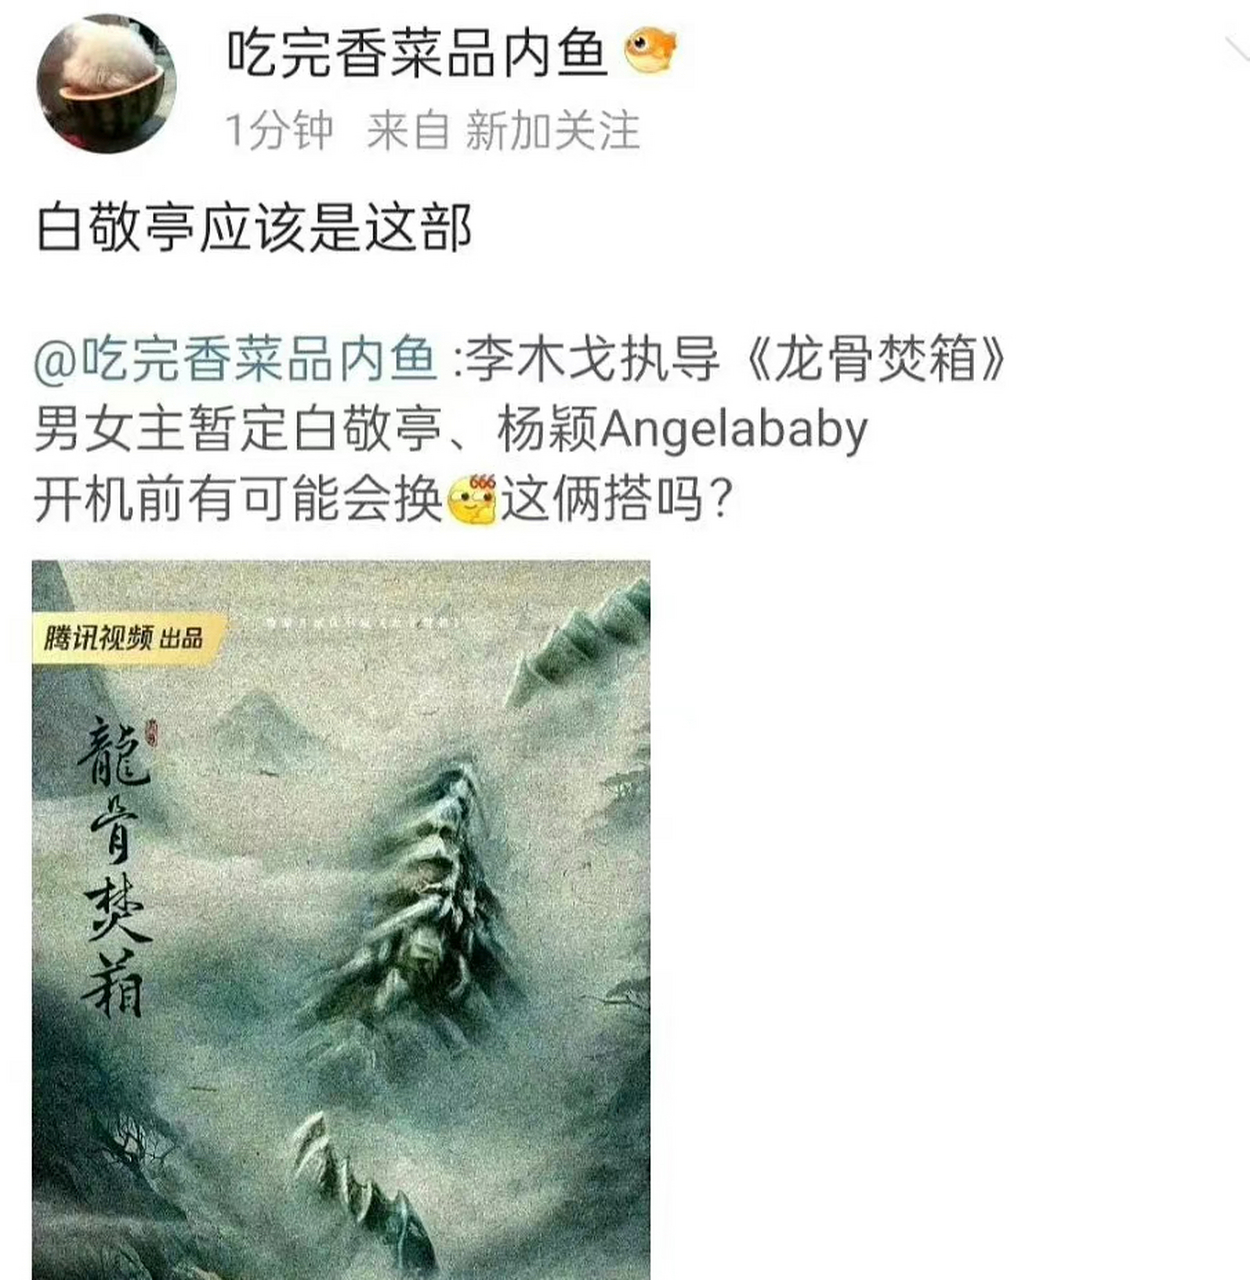 白敬亭angelababy图片